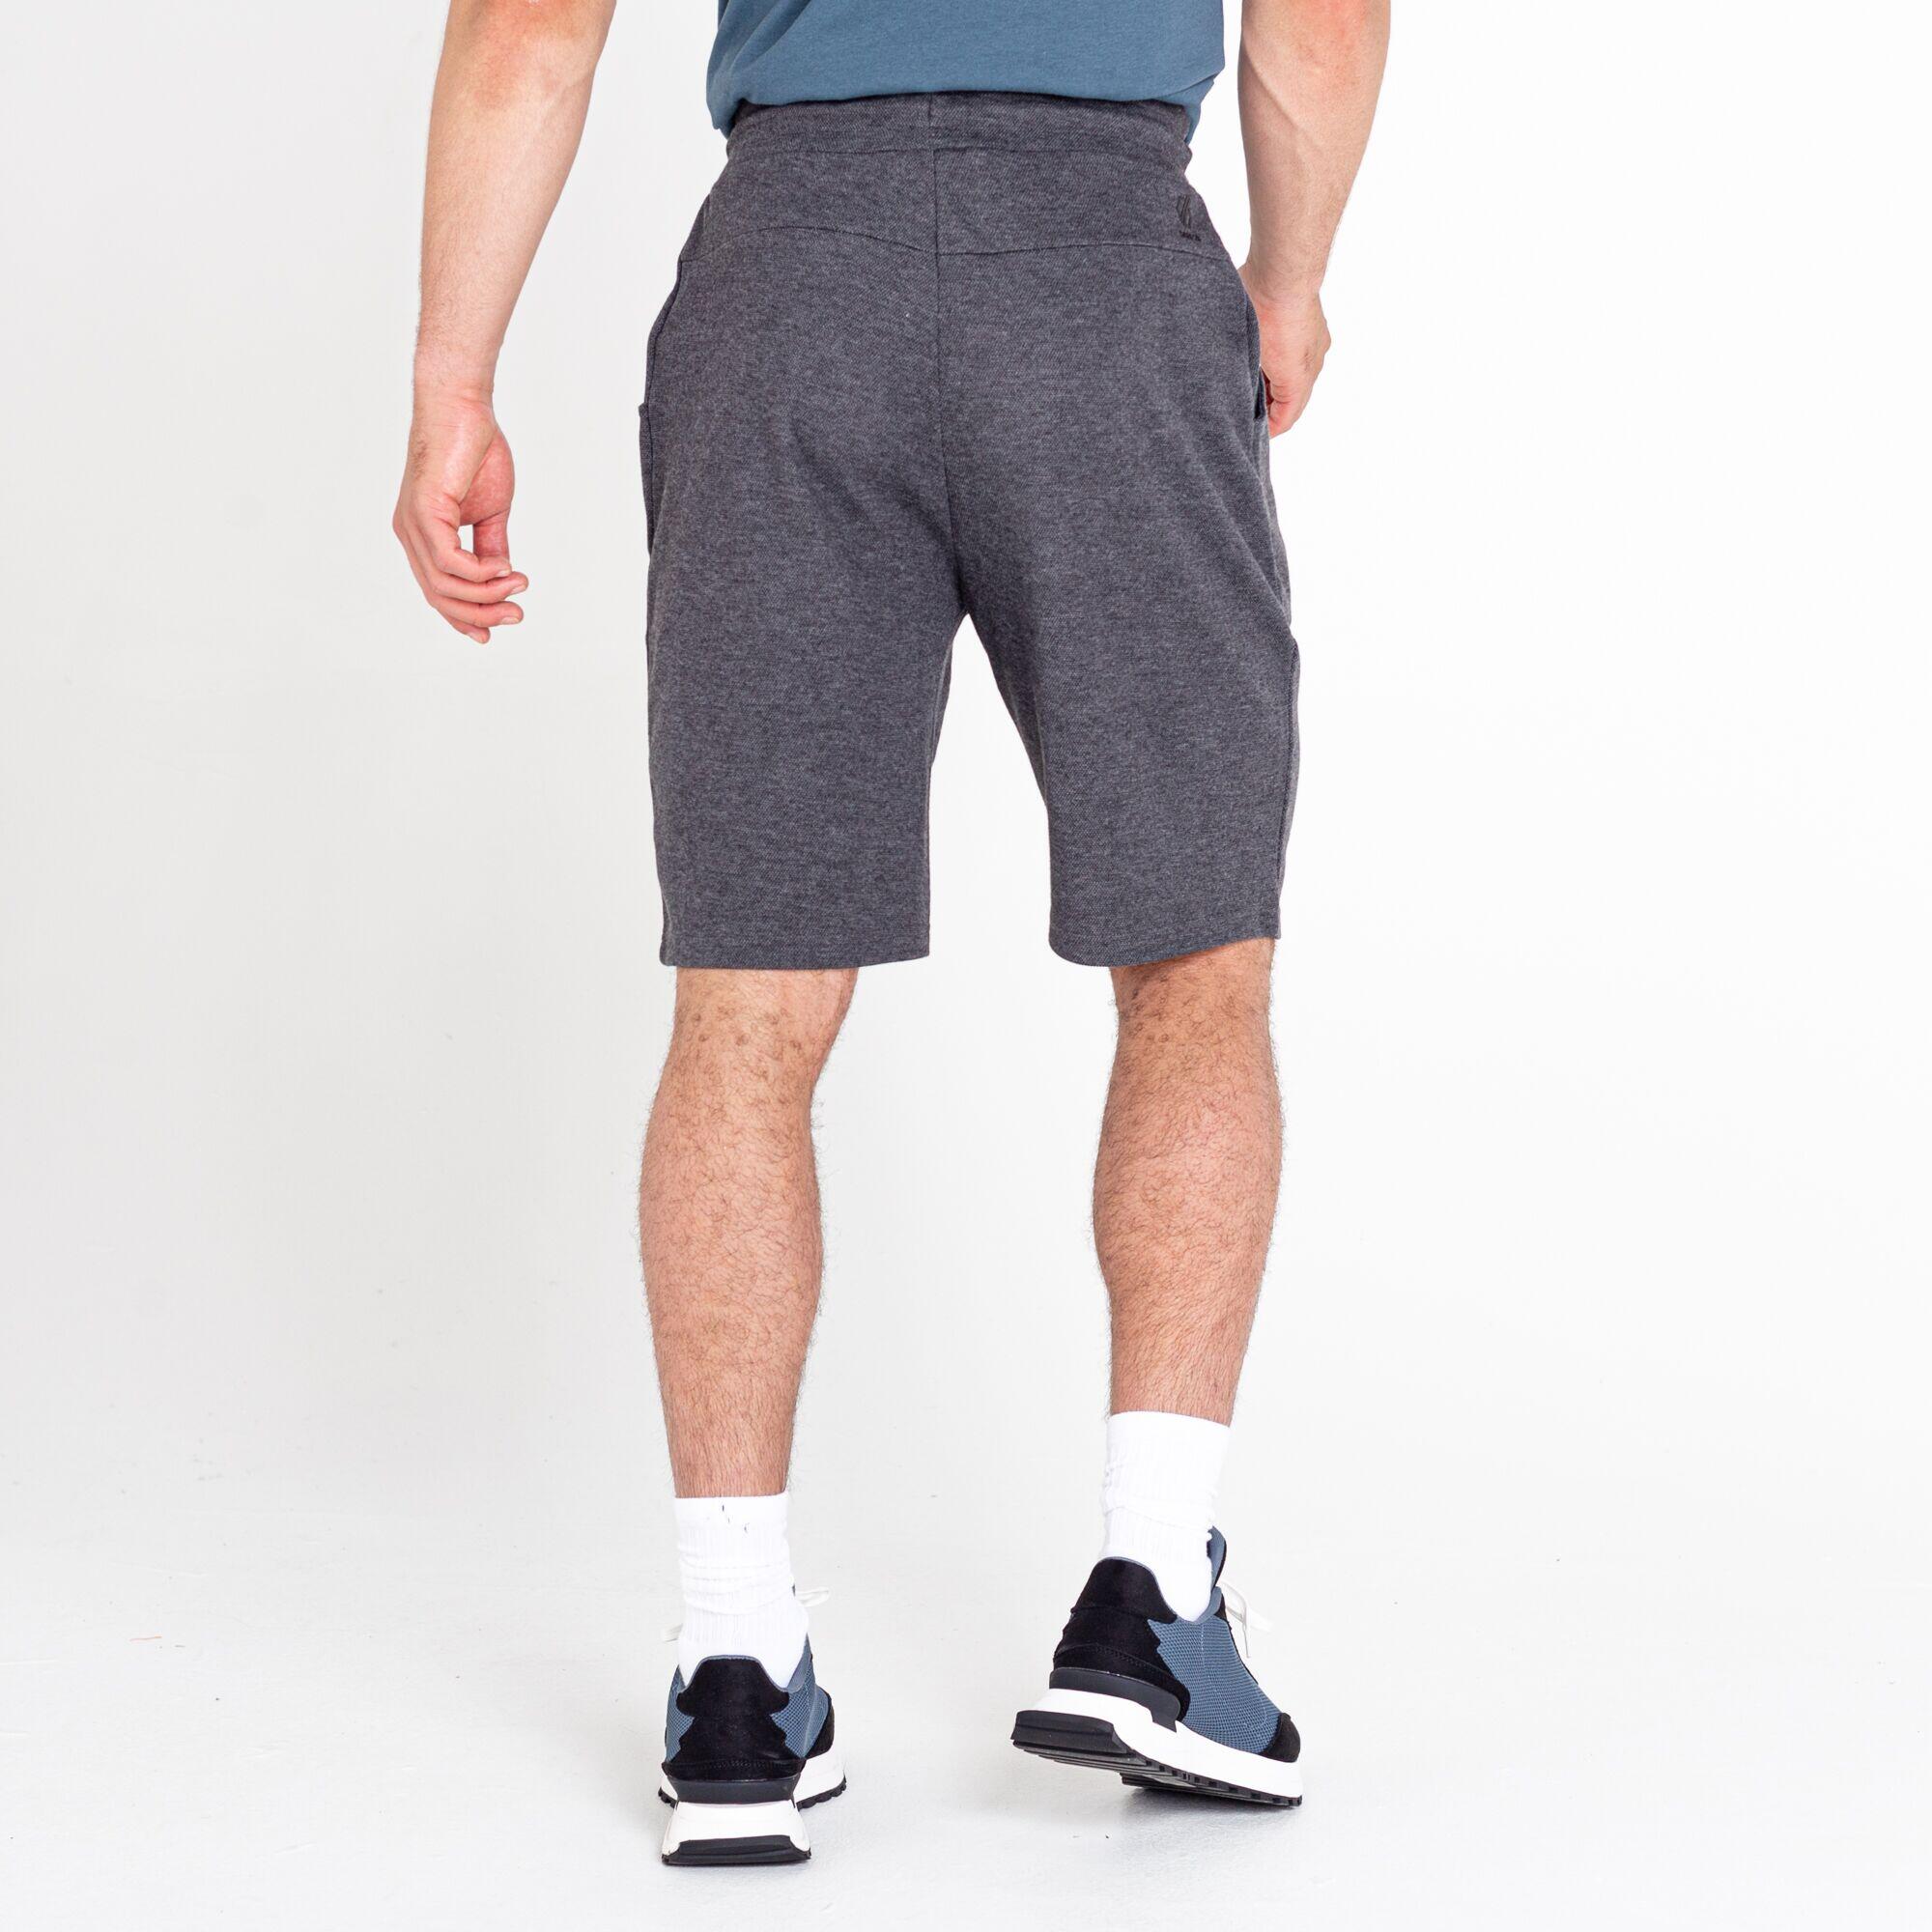 Men's Continual Drawstring Shorts 3/5